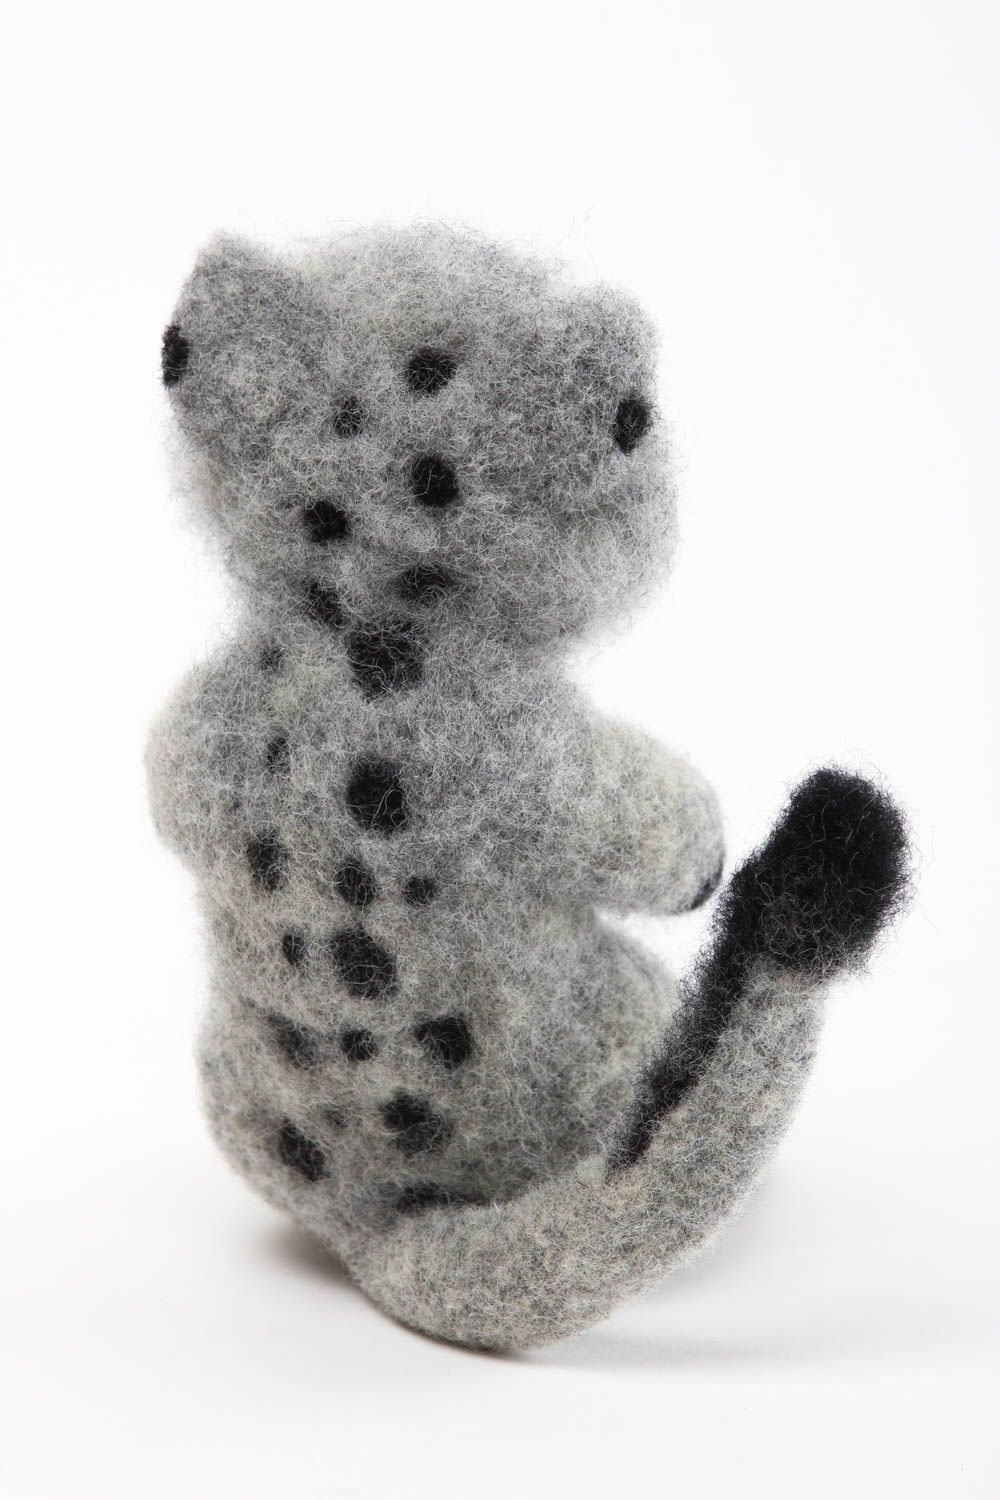 Handmade Tier gefilzt natürliches Spielzeug Katze Kuscheltier schön grau foto 4